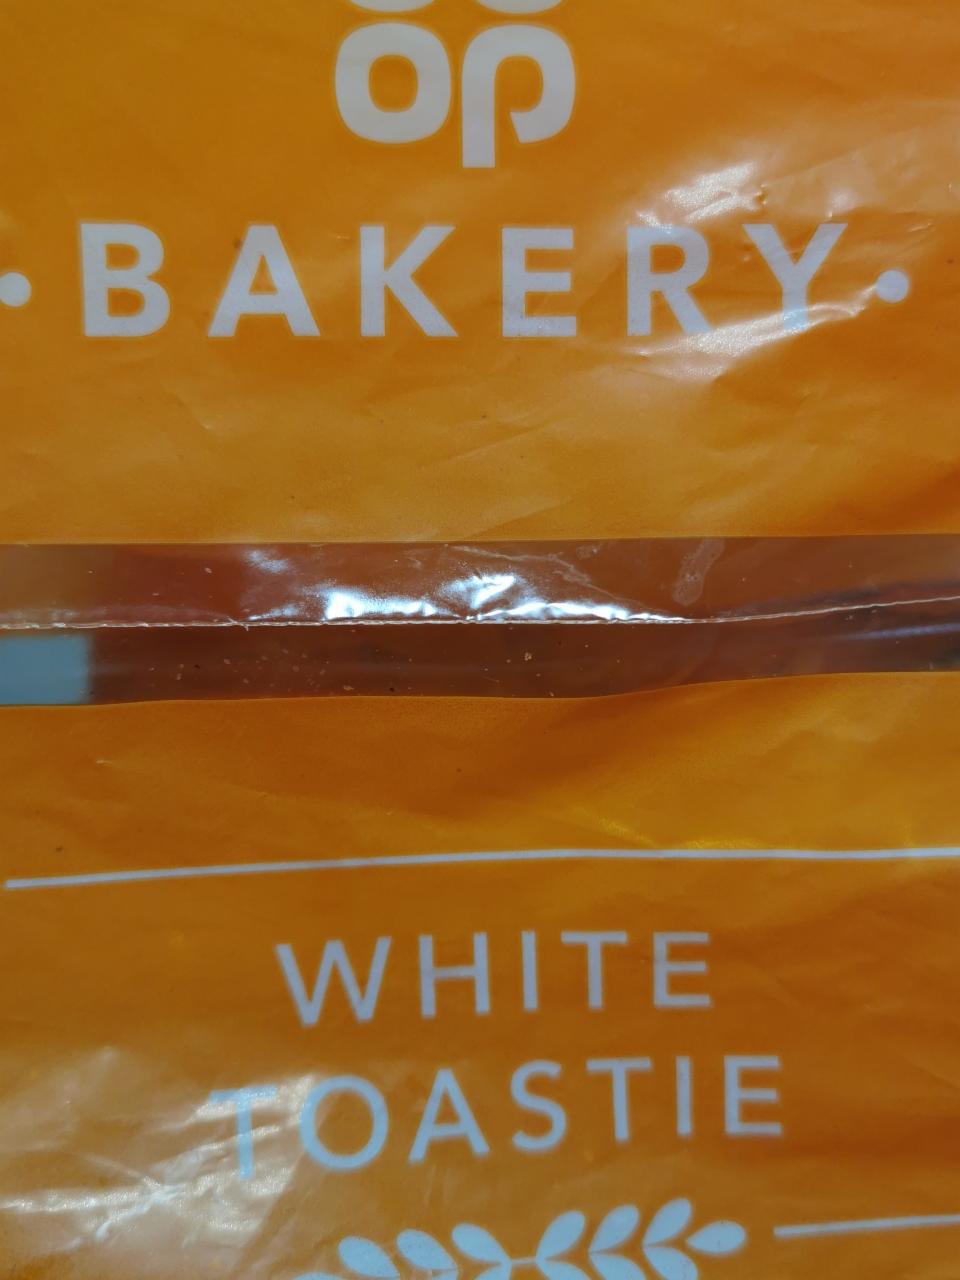 Fotografie - White Toastie Co-op Bakery